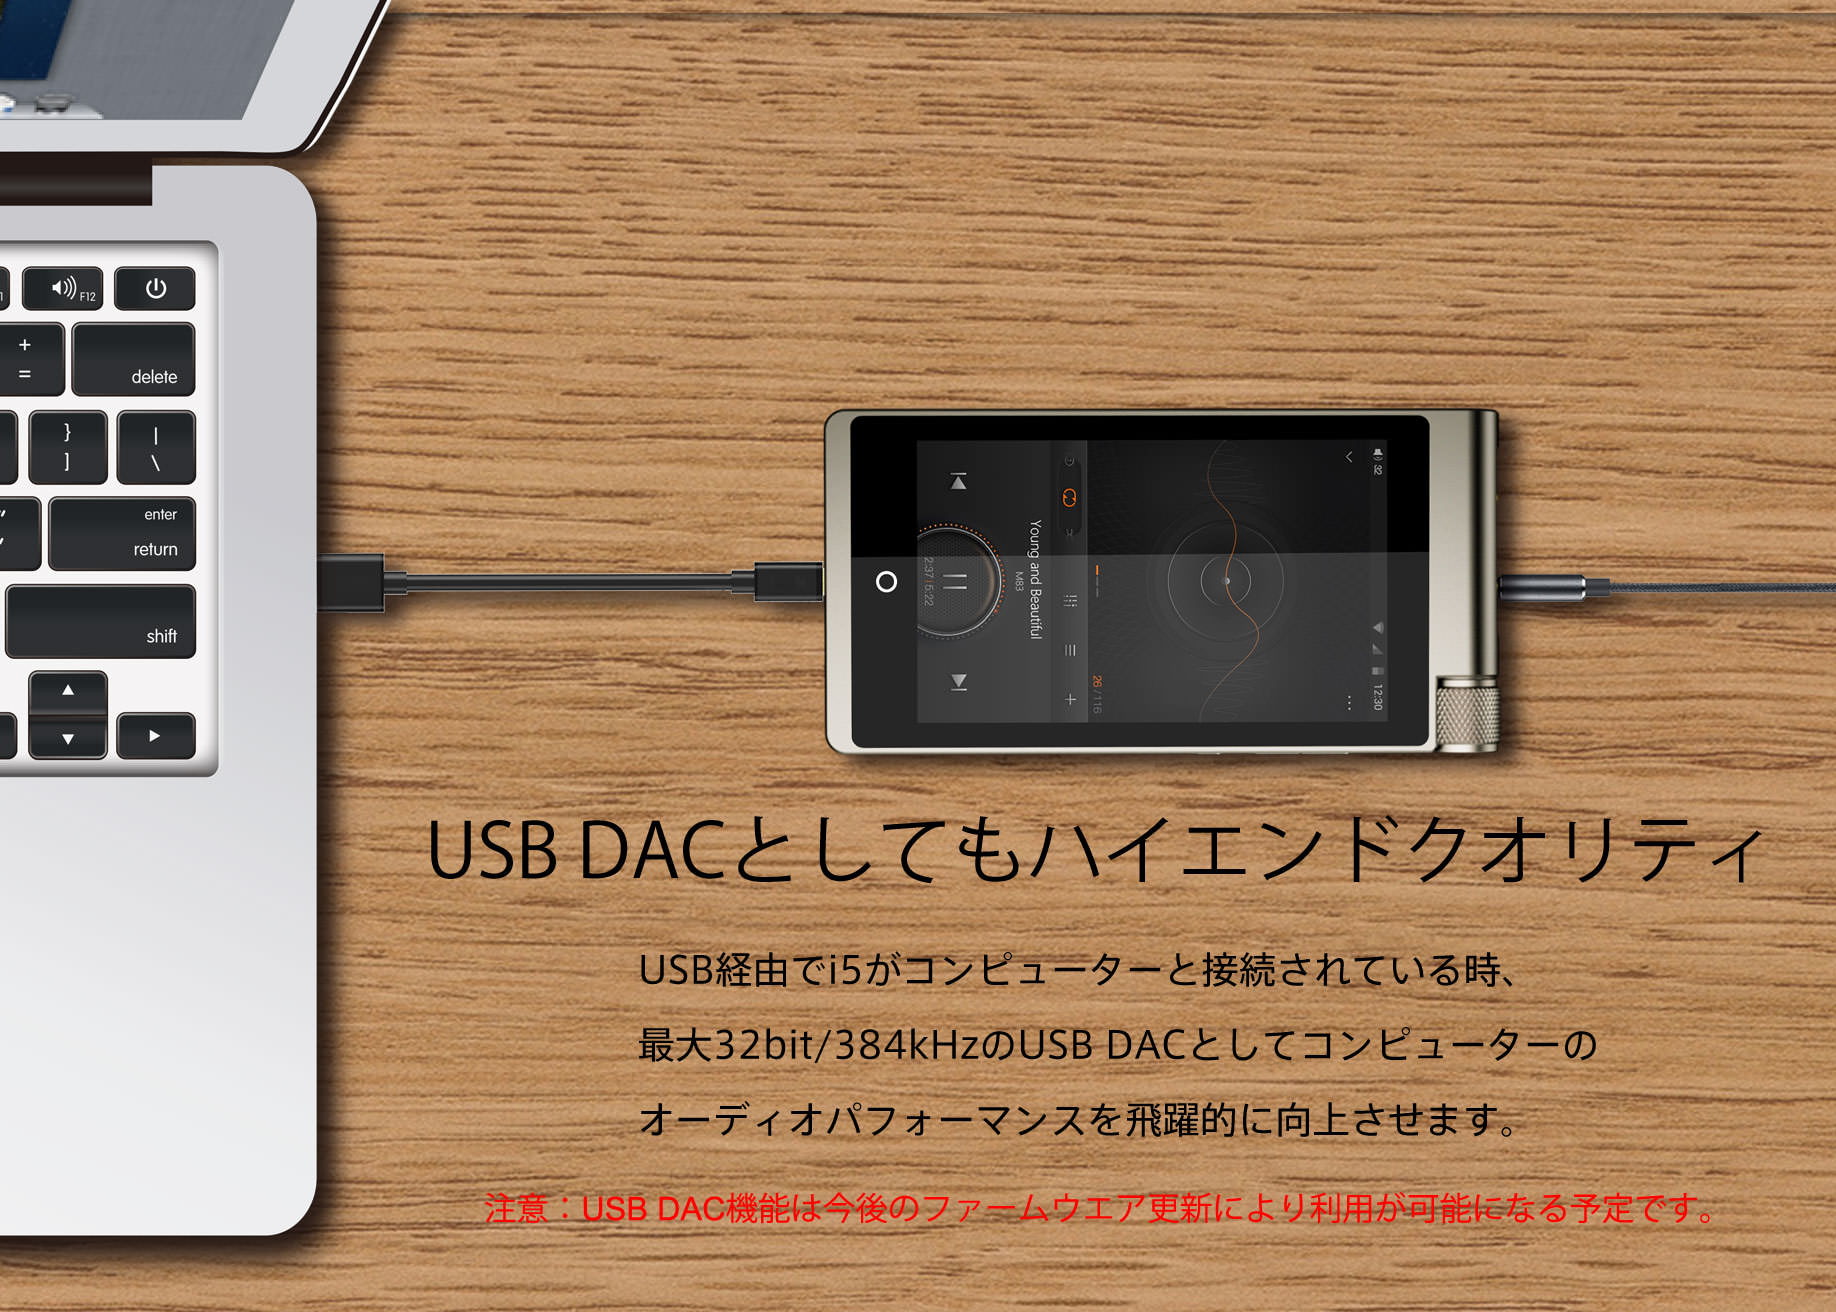 USB DACとしてもハイエンドクオリティ
USB経由でi5がコンピューターと接続されている時、最大32bit/384kHzのUSB DACとして
コンピューターのオーディオパフォーマンスを飛躍的に向上させます。
注意：USB DAC機能は今後のファームウエア更新により利用が可能になる予定です。
